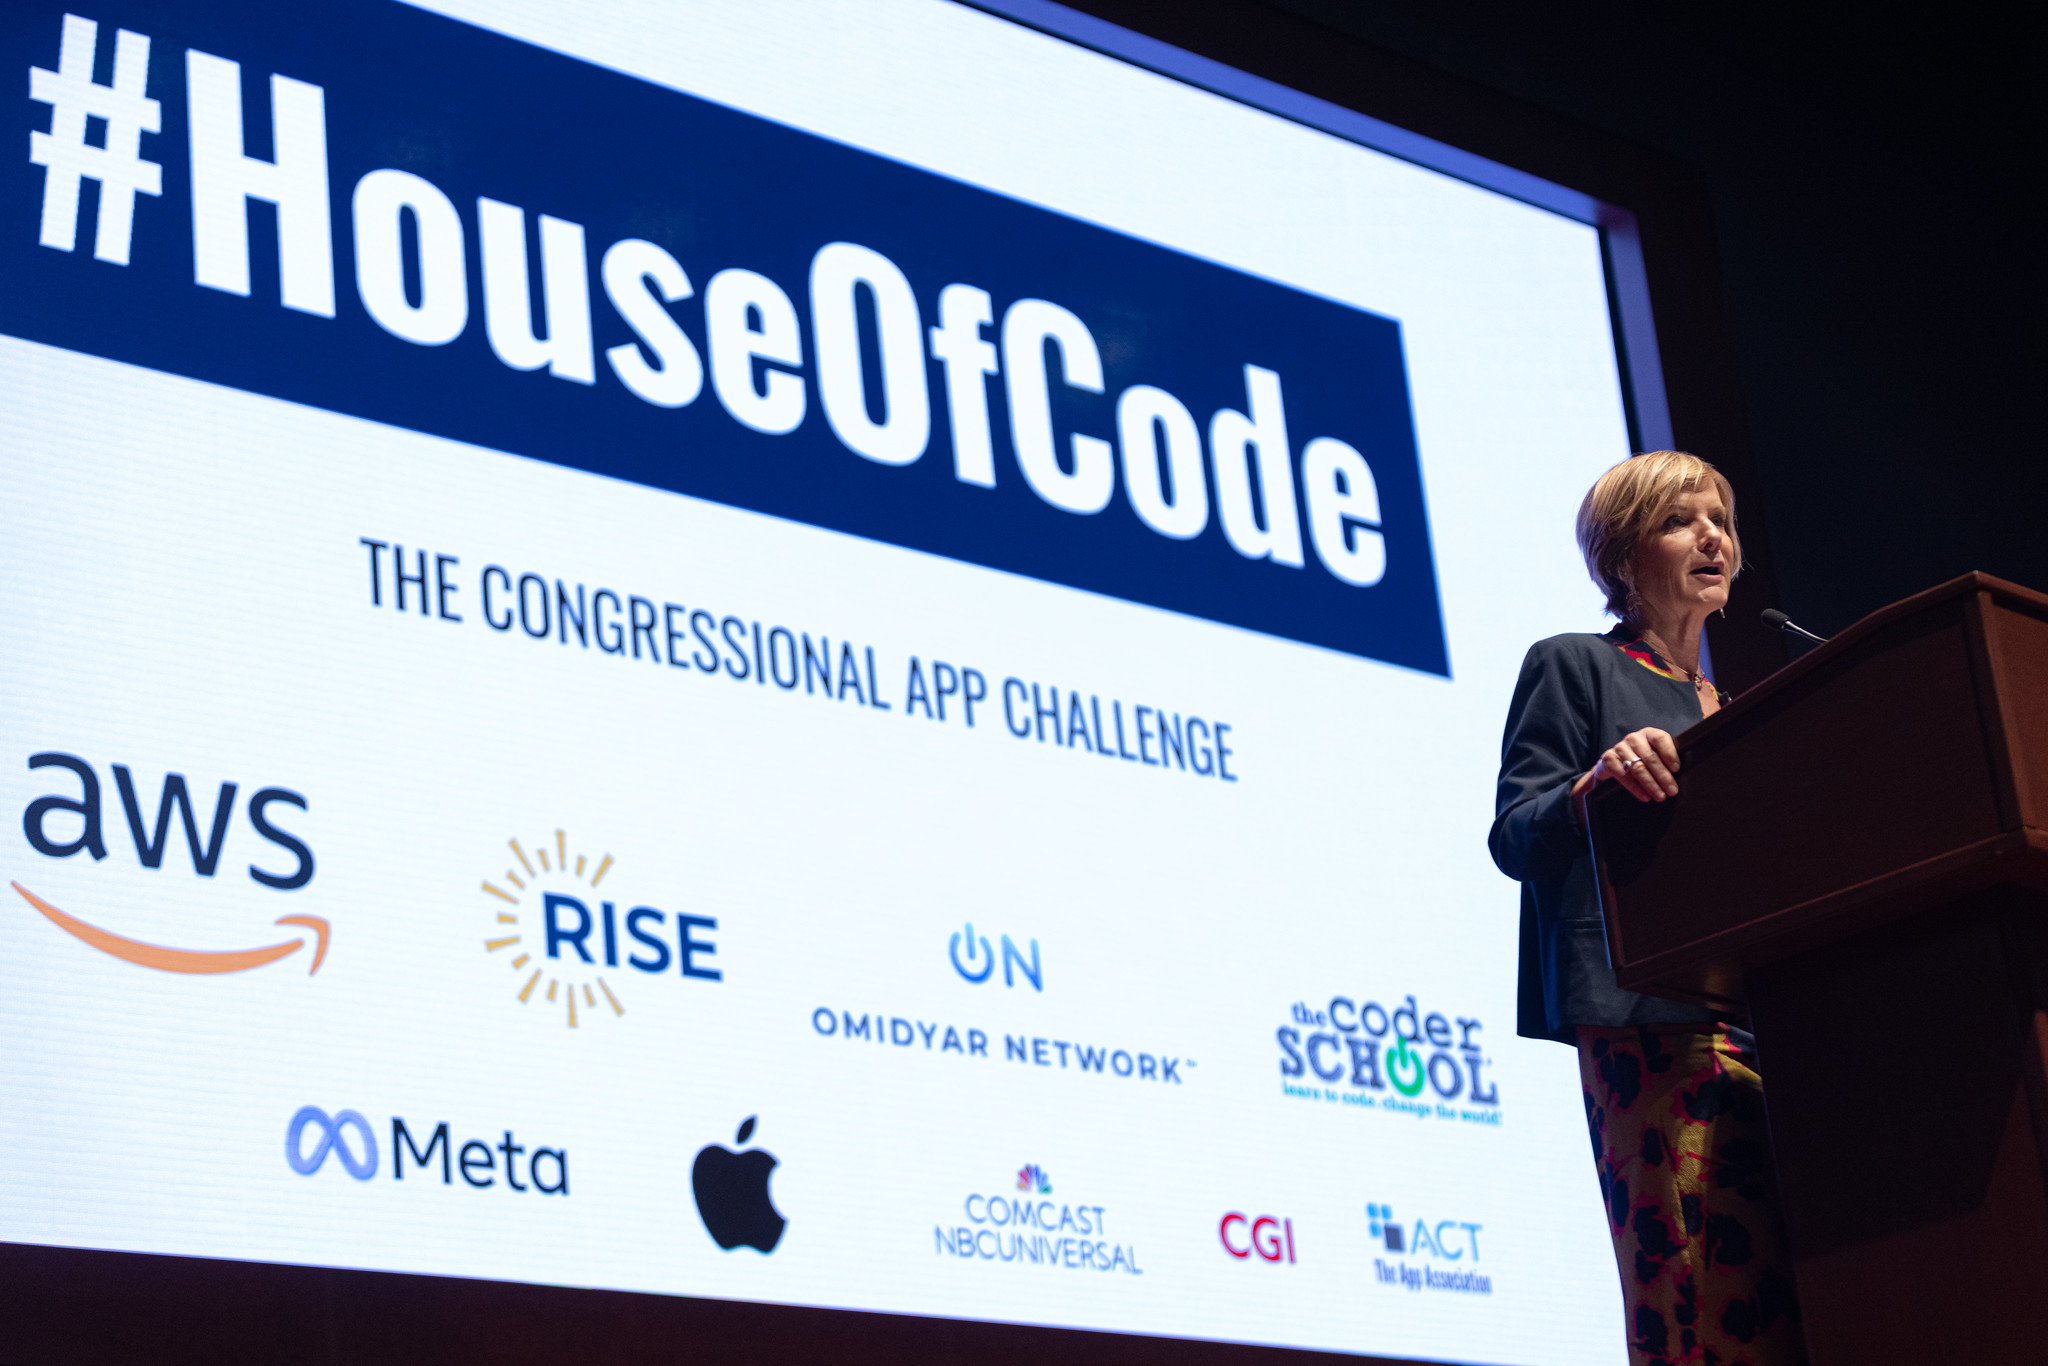 Rep. Susie Lee keynoting #HouseOfCode